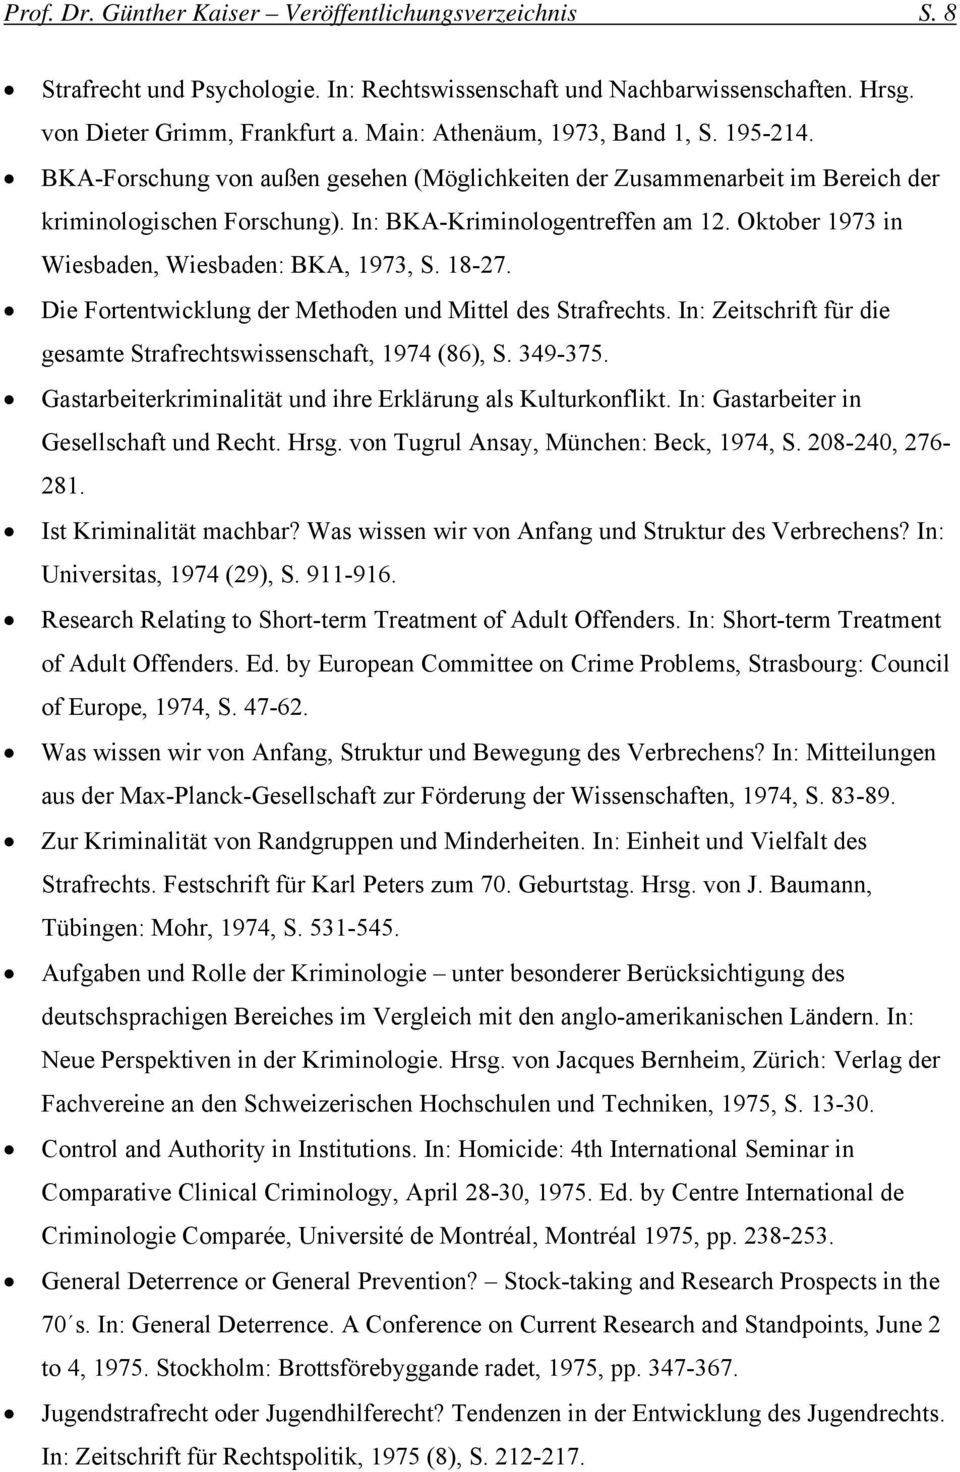 Oktober 1973 in Wiesbaden, Wiesbaden: BKA, 1973, S. 18-27. Die Fortentwicklung der Methoden und Mittel des Strafrechts. In: Zeitschrift für die gesamte Strafrechtswissenschaft, 1974 (86), S. 349-375.